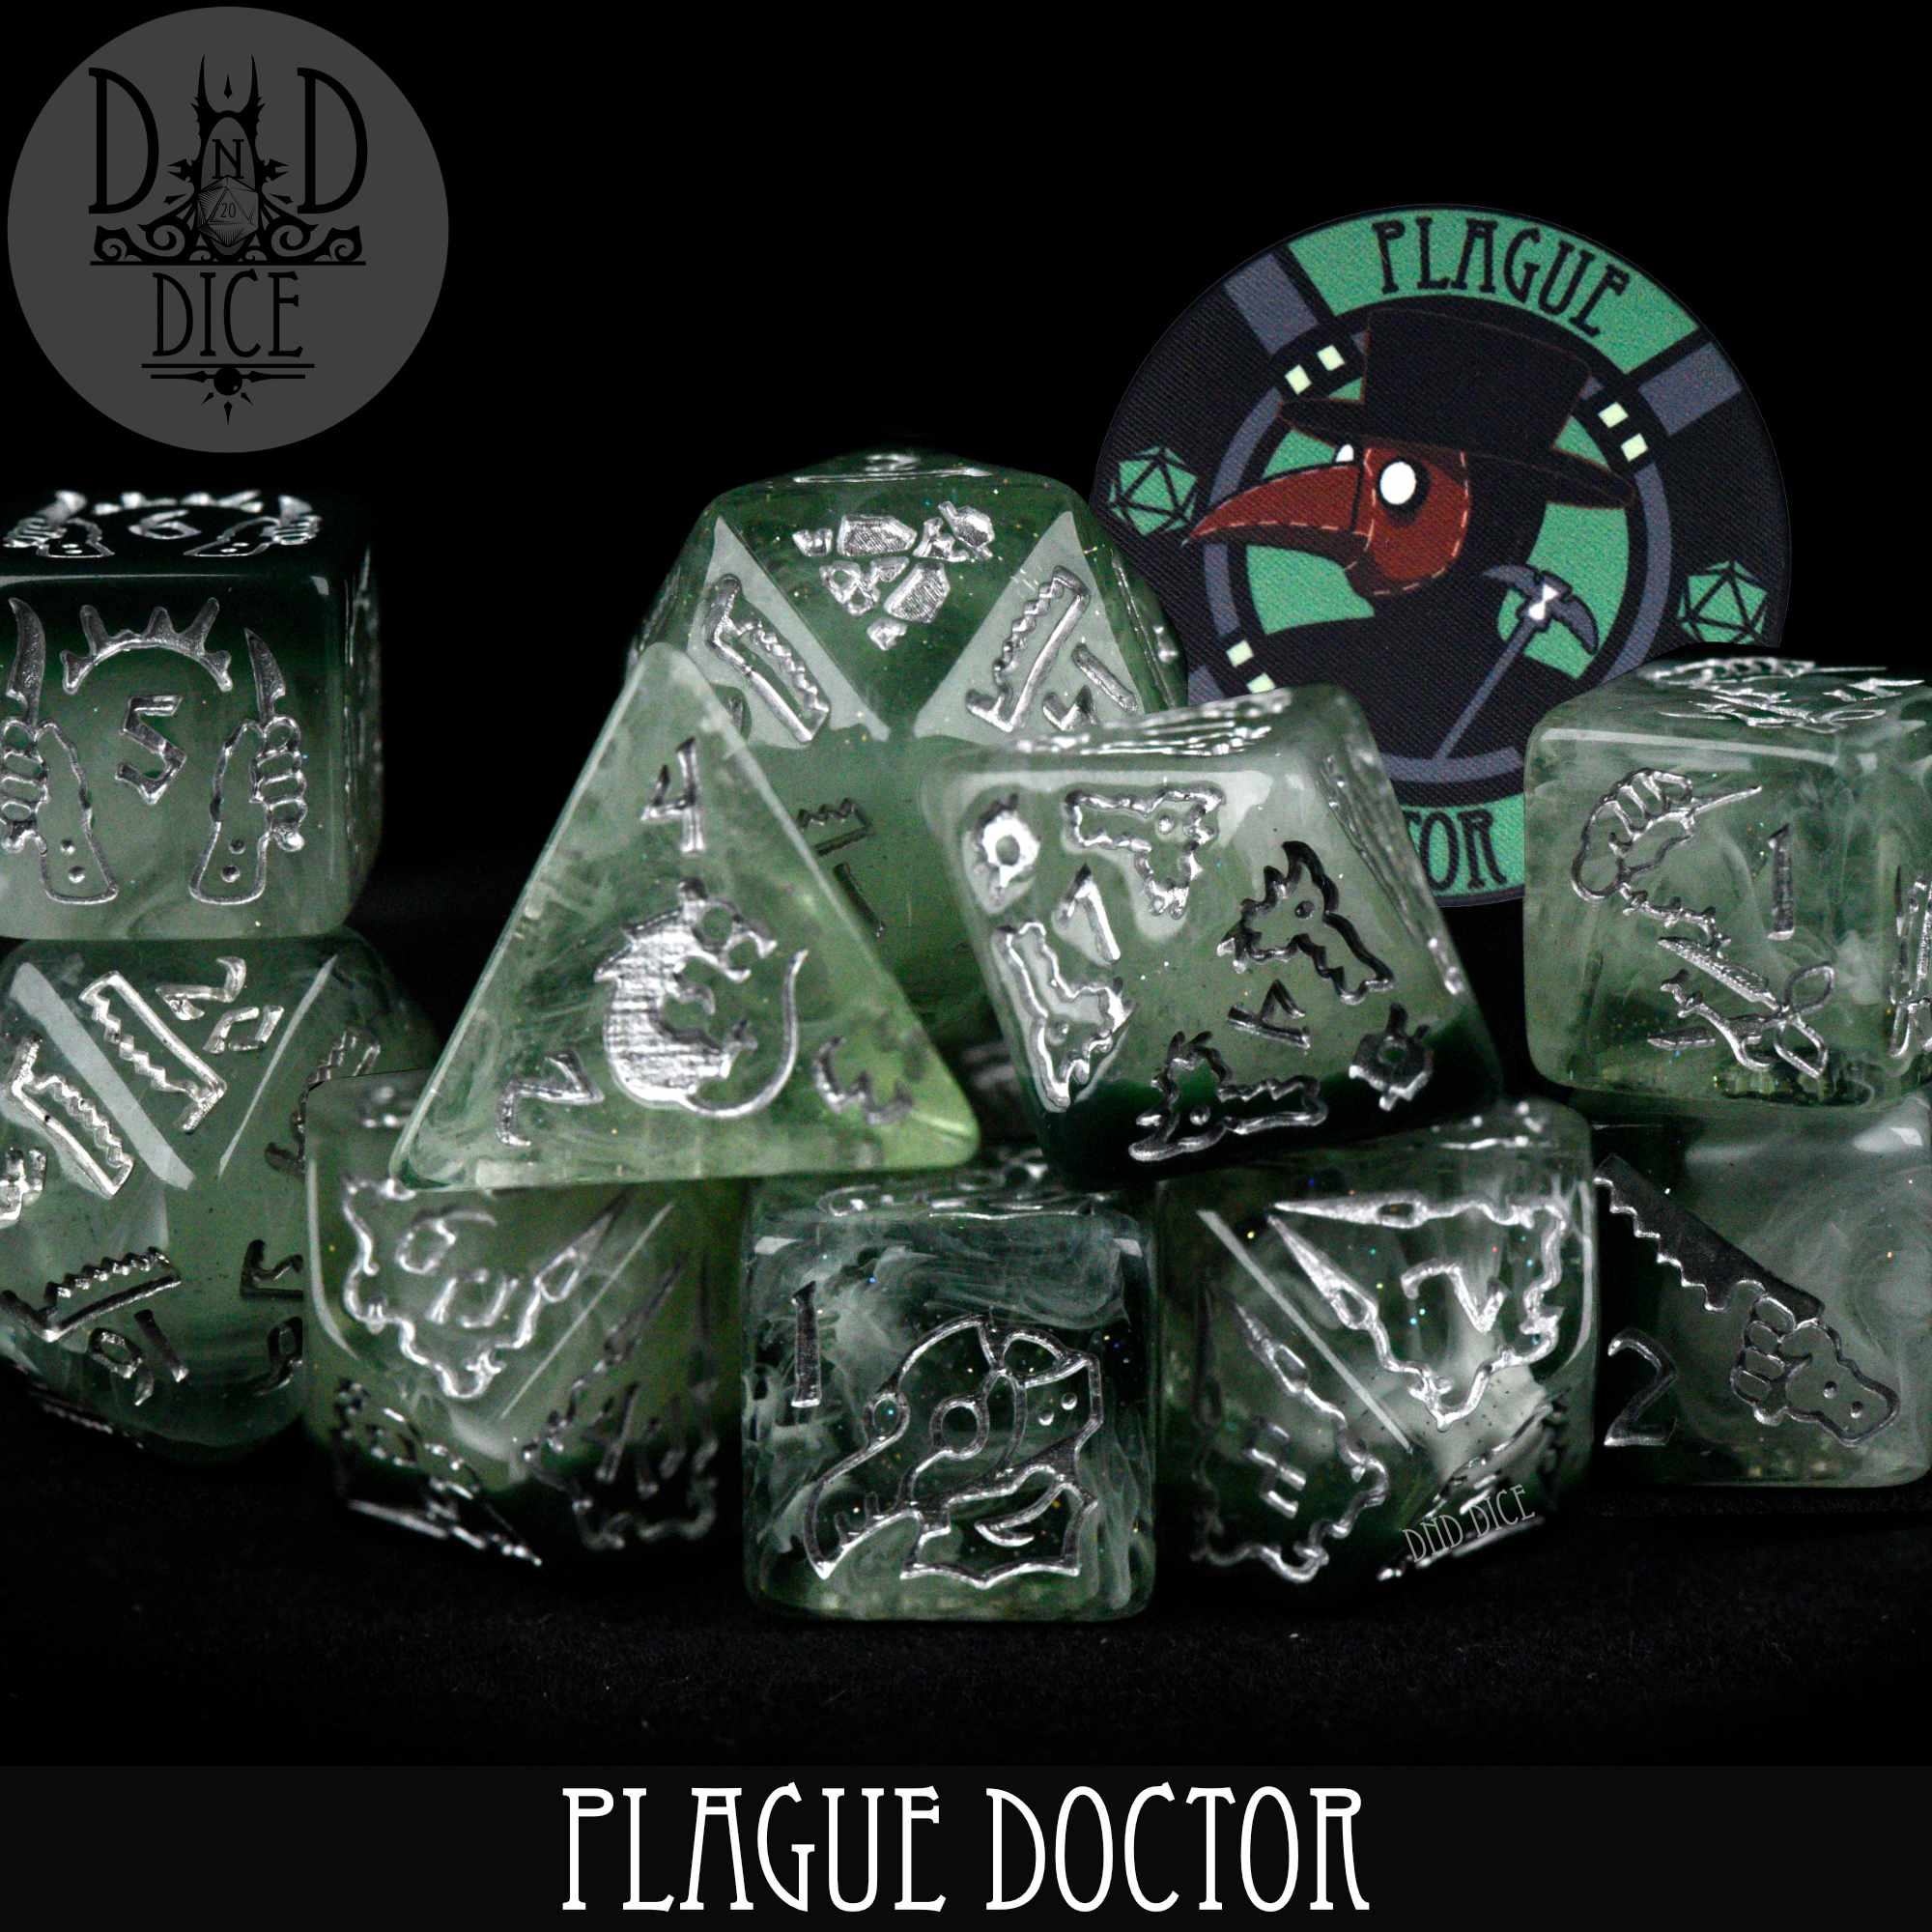 Plague Doctor - 11 Dice Set